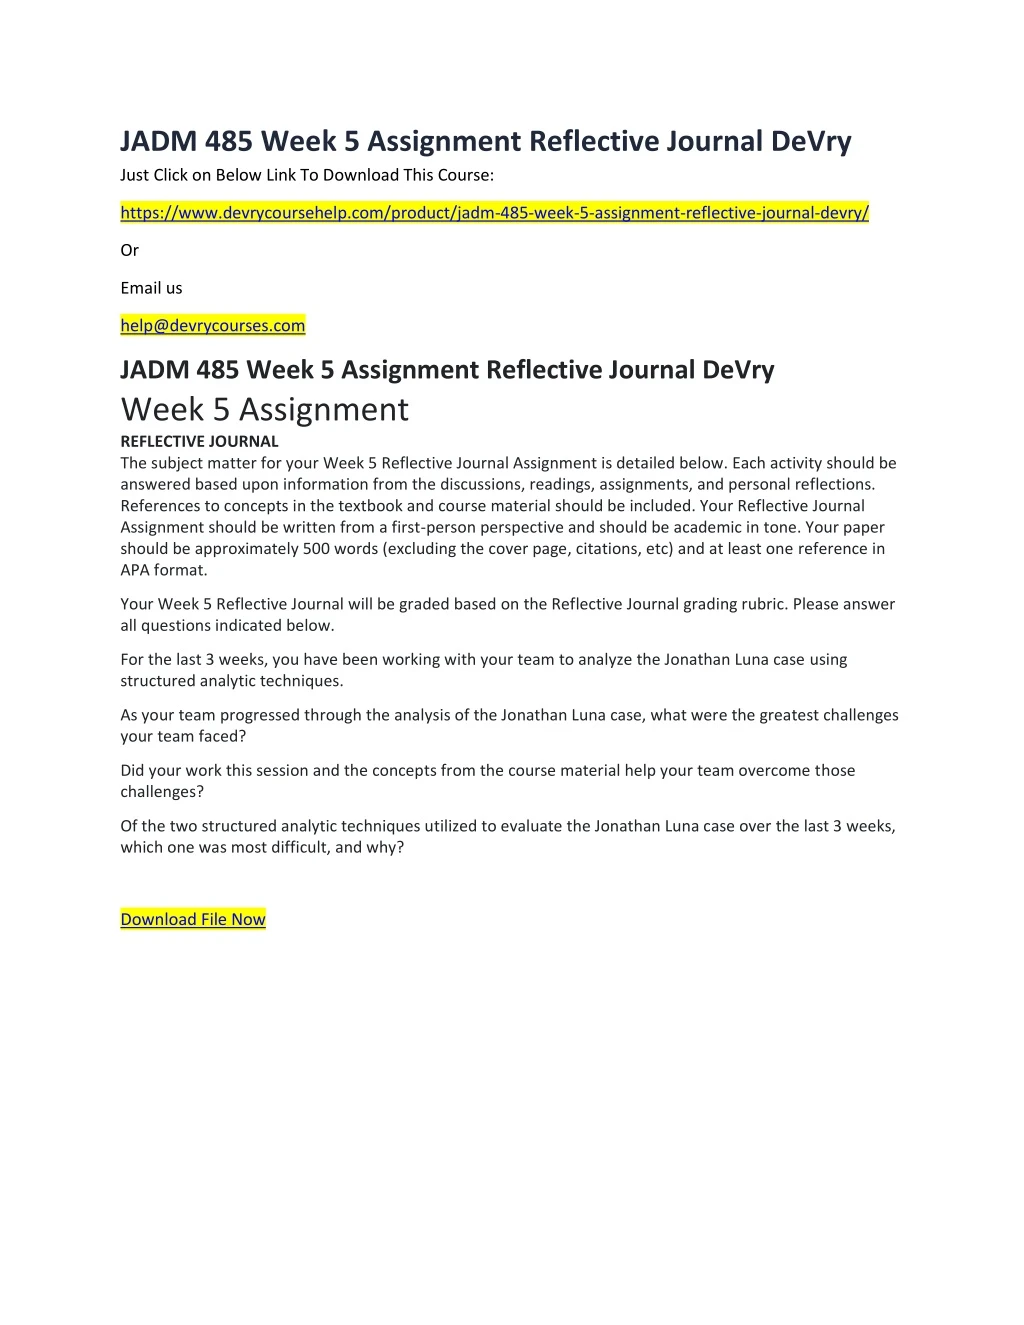 jadm 485 week 5 assignment reflective journal